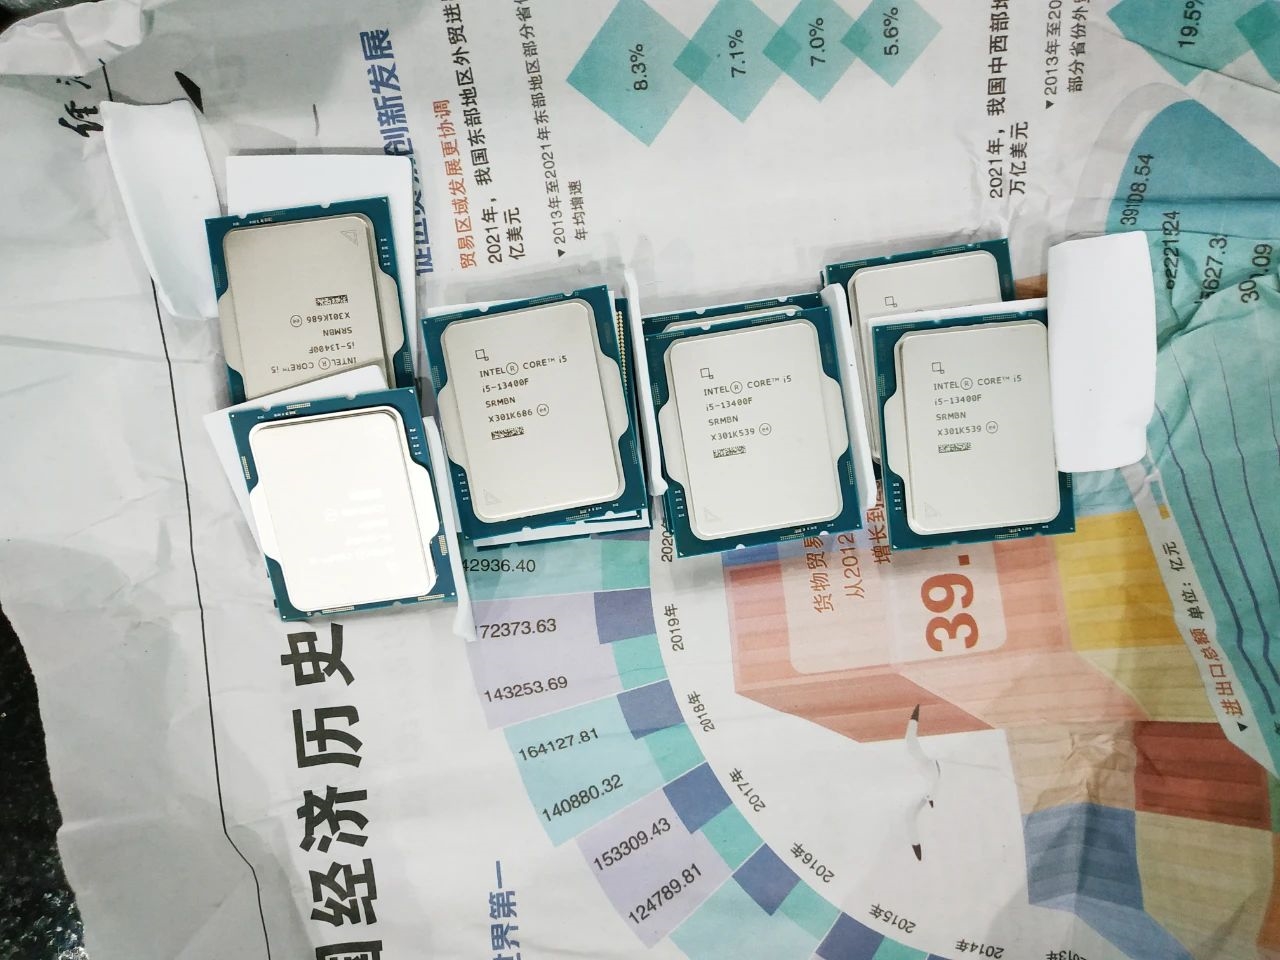 Arrêté avec 239 processeurs Intel de 13e gen sur lui, qui dit mieux ?